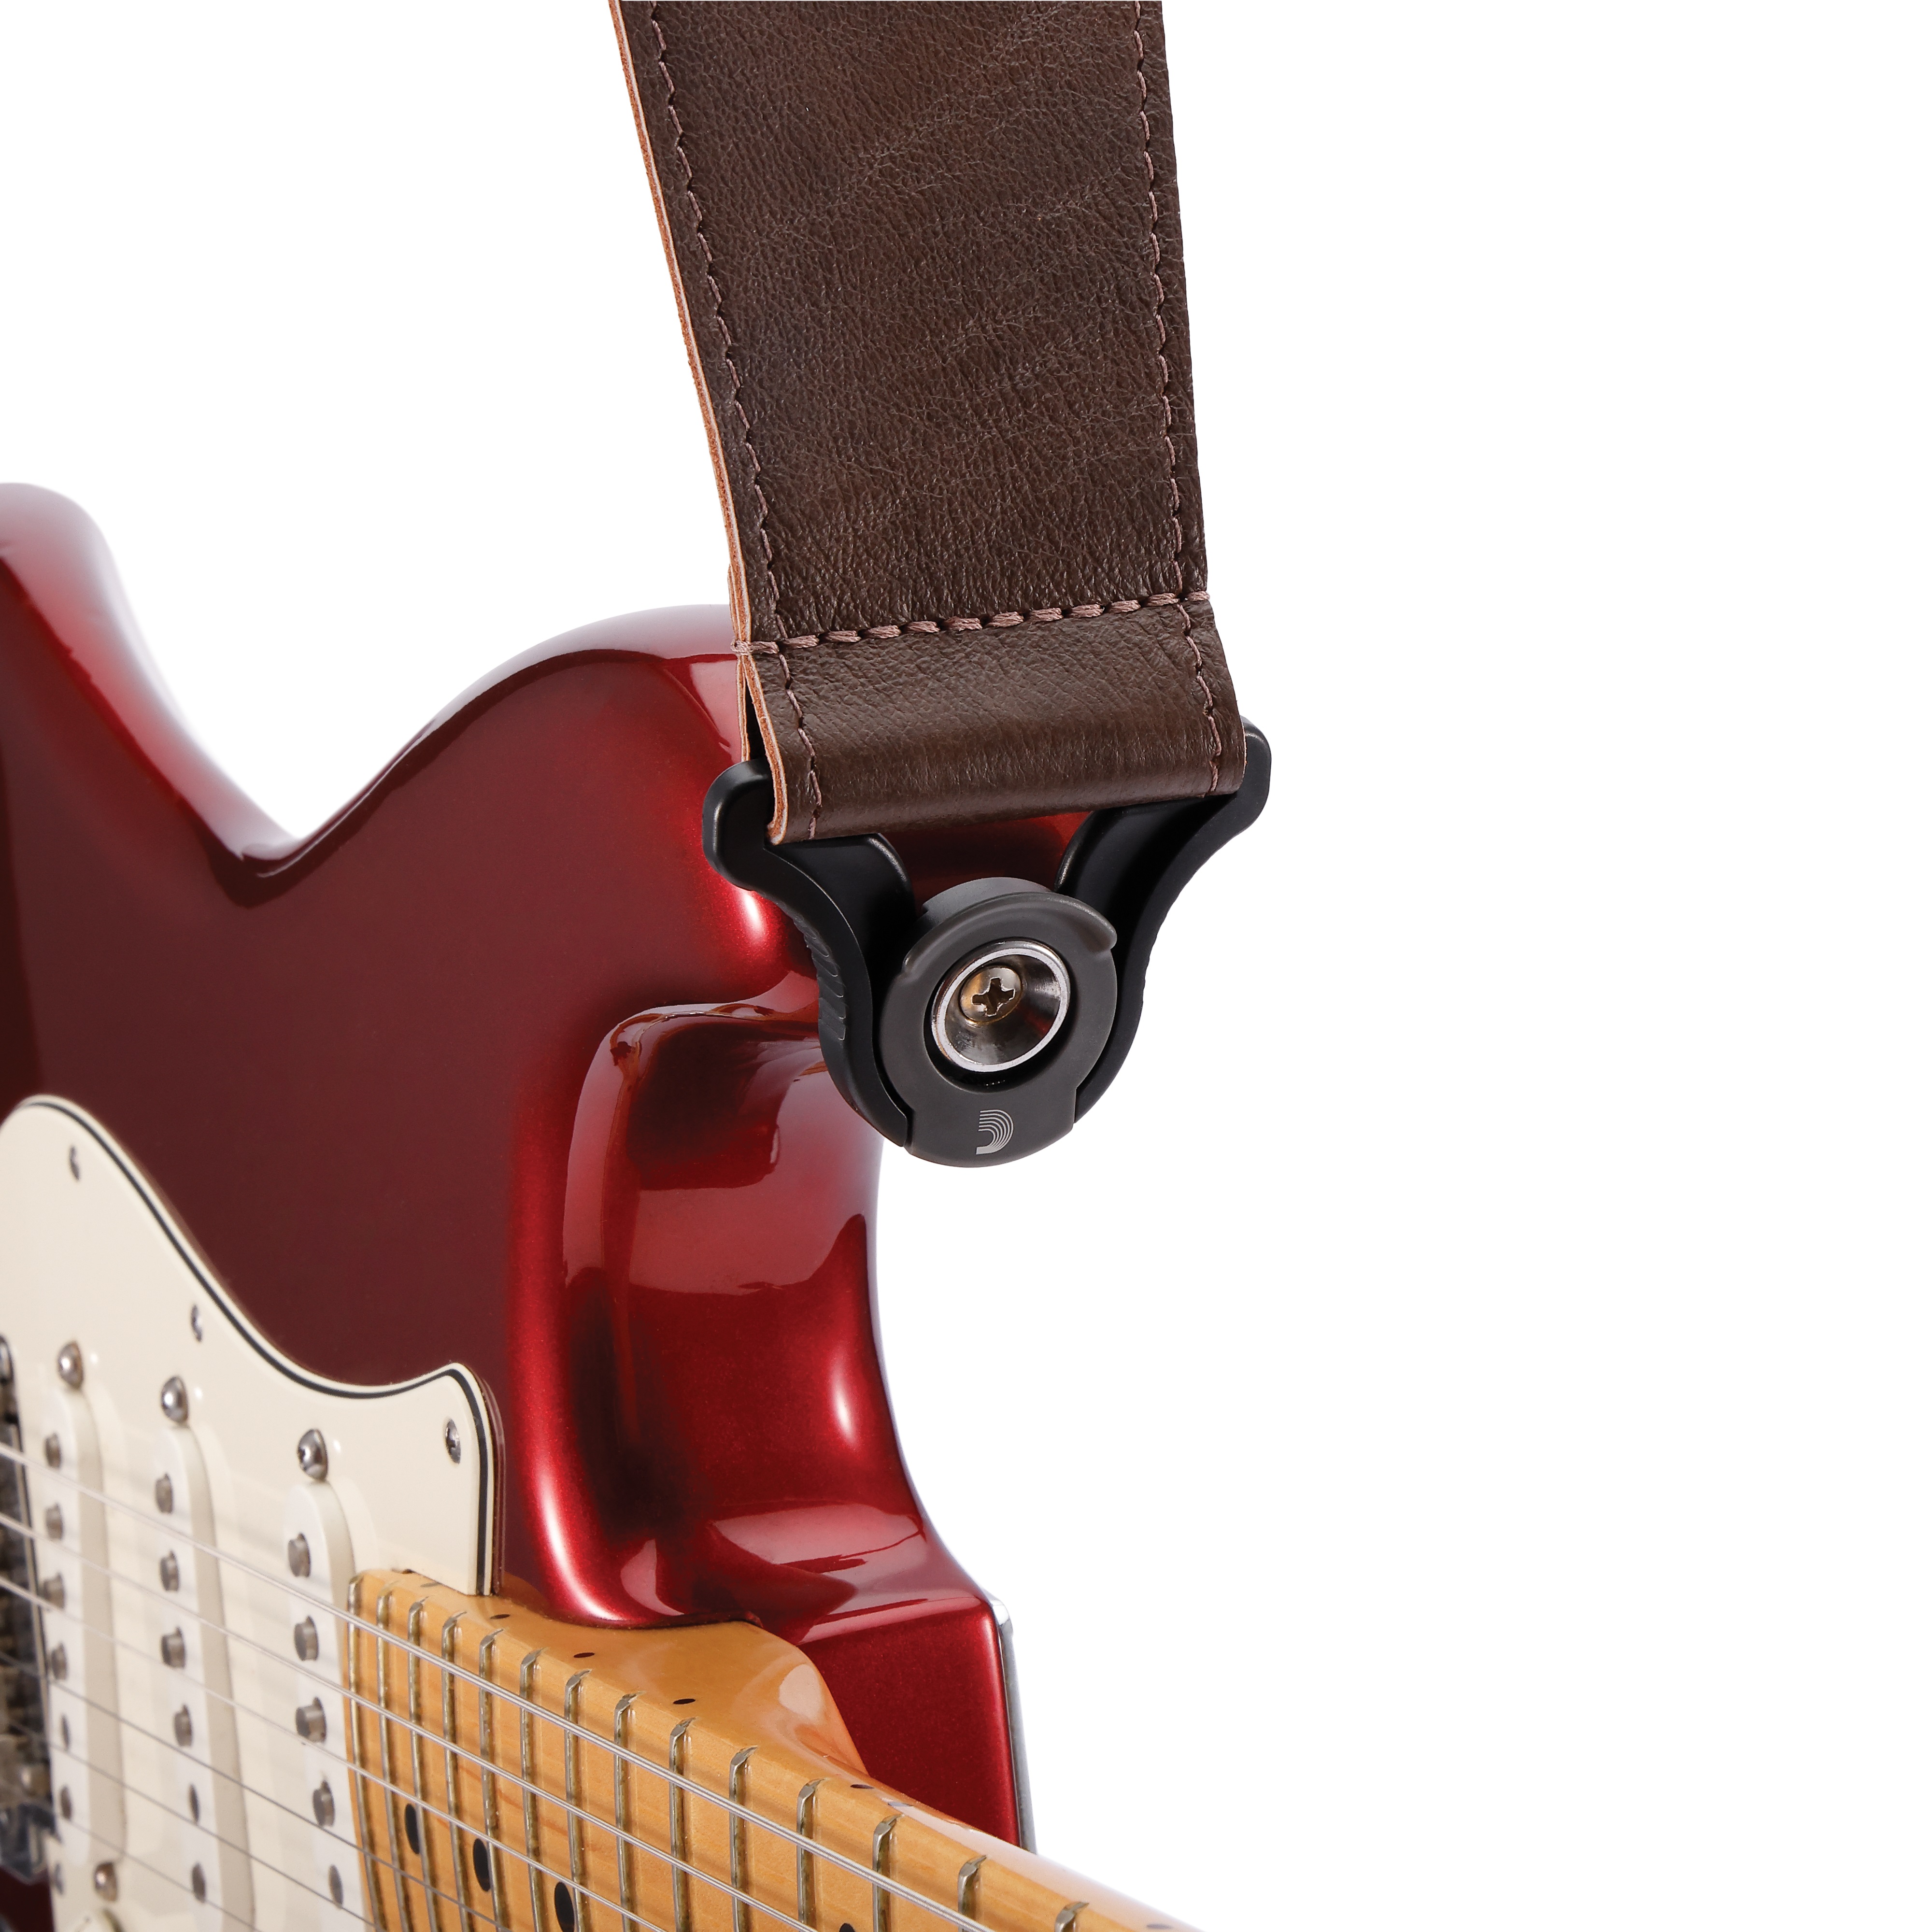 D'addario Auto Lock Cuir Guitar Strap Brown 6,3 Cm - Sangle Courroie - Variation 3